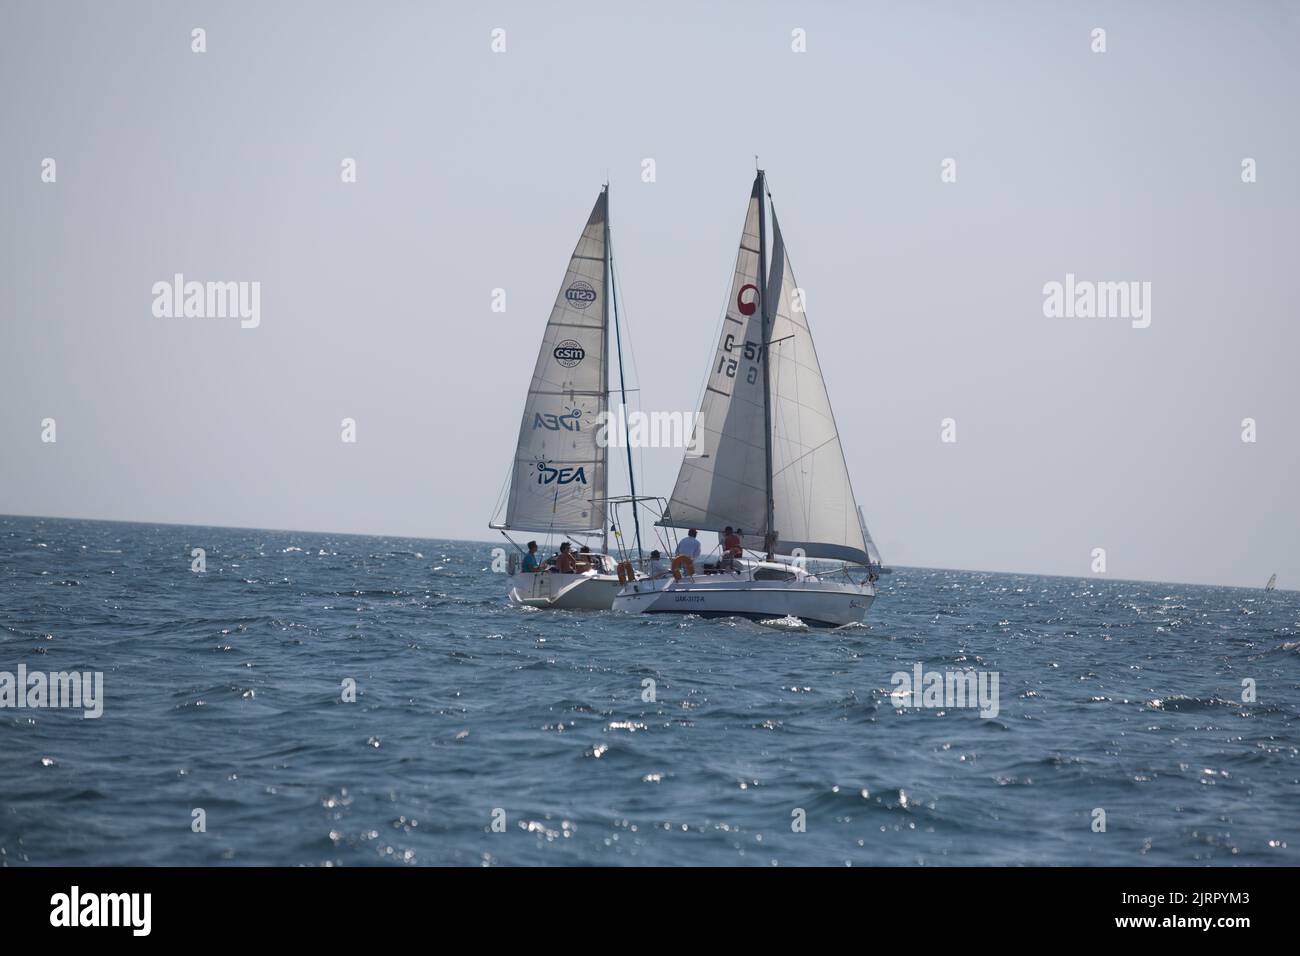 Segelyacht-Regatta. Segelboote unter Segel im Rennen. Yachting. Luxusyachten. Stockfoto